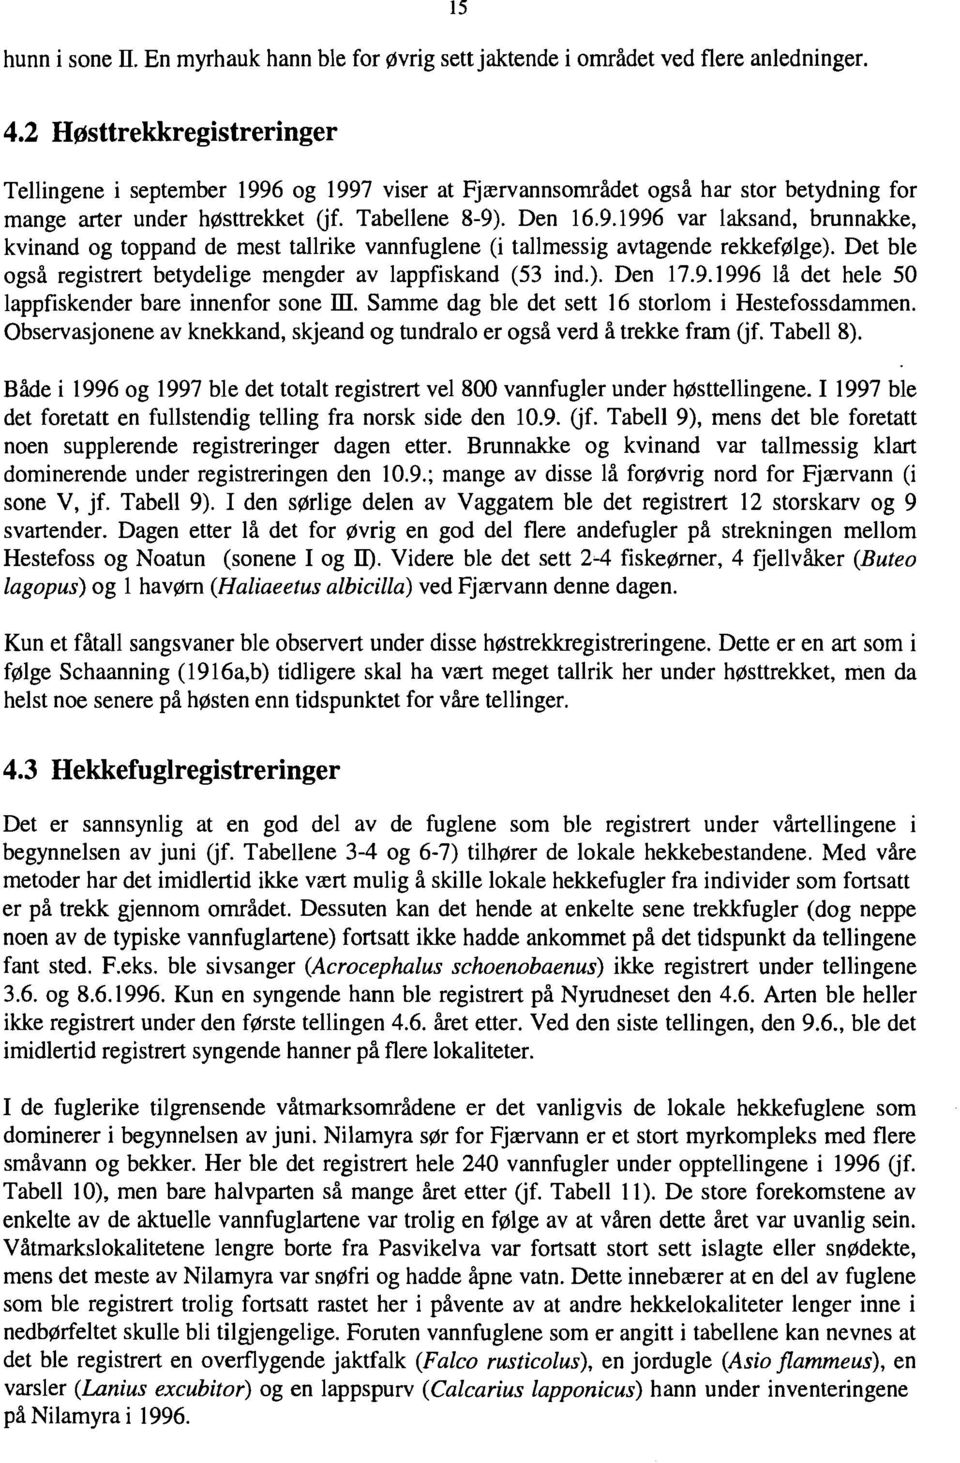 Det ble også registrert betydelige mengder av lappfiskand (53 ind.). Den 17.9.1996 lå det hele 50 lappfiskender bare innenfor sone m. Samme dag ble det sett 16 storlom i Hestefossdammen.